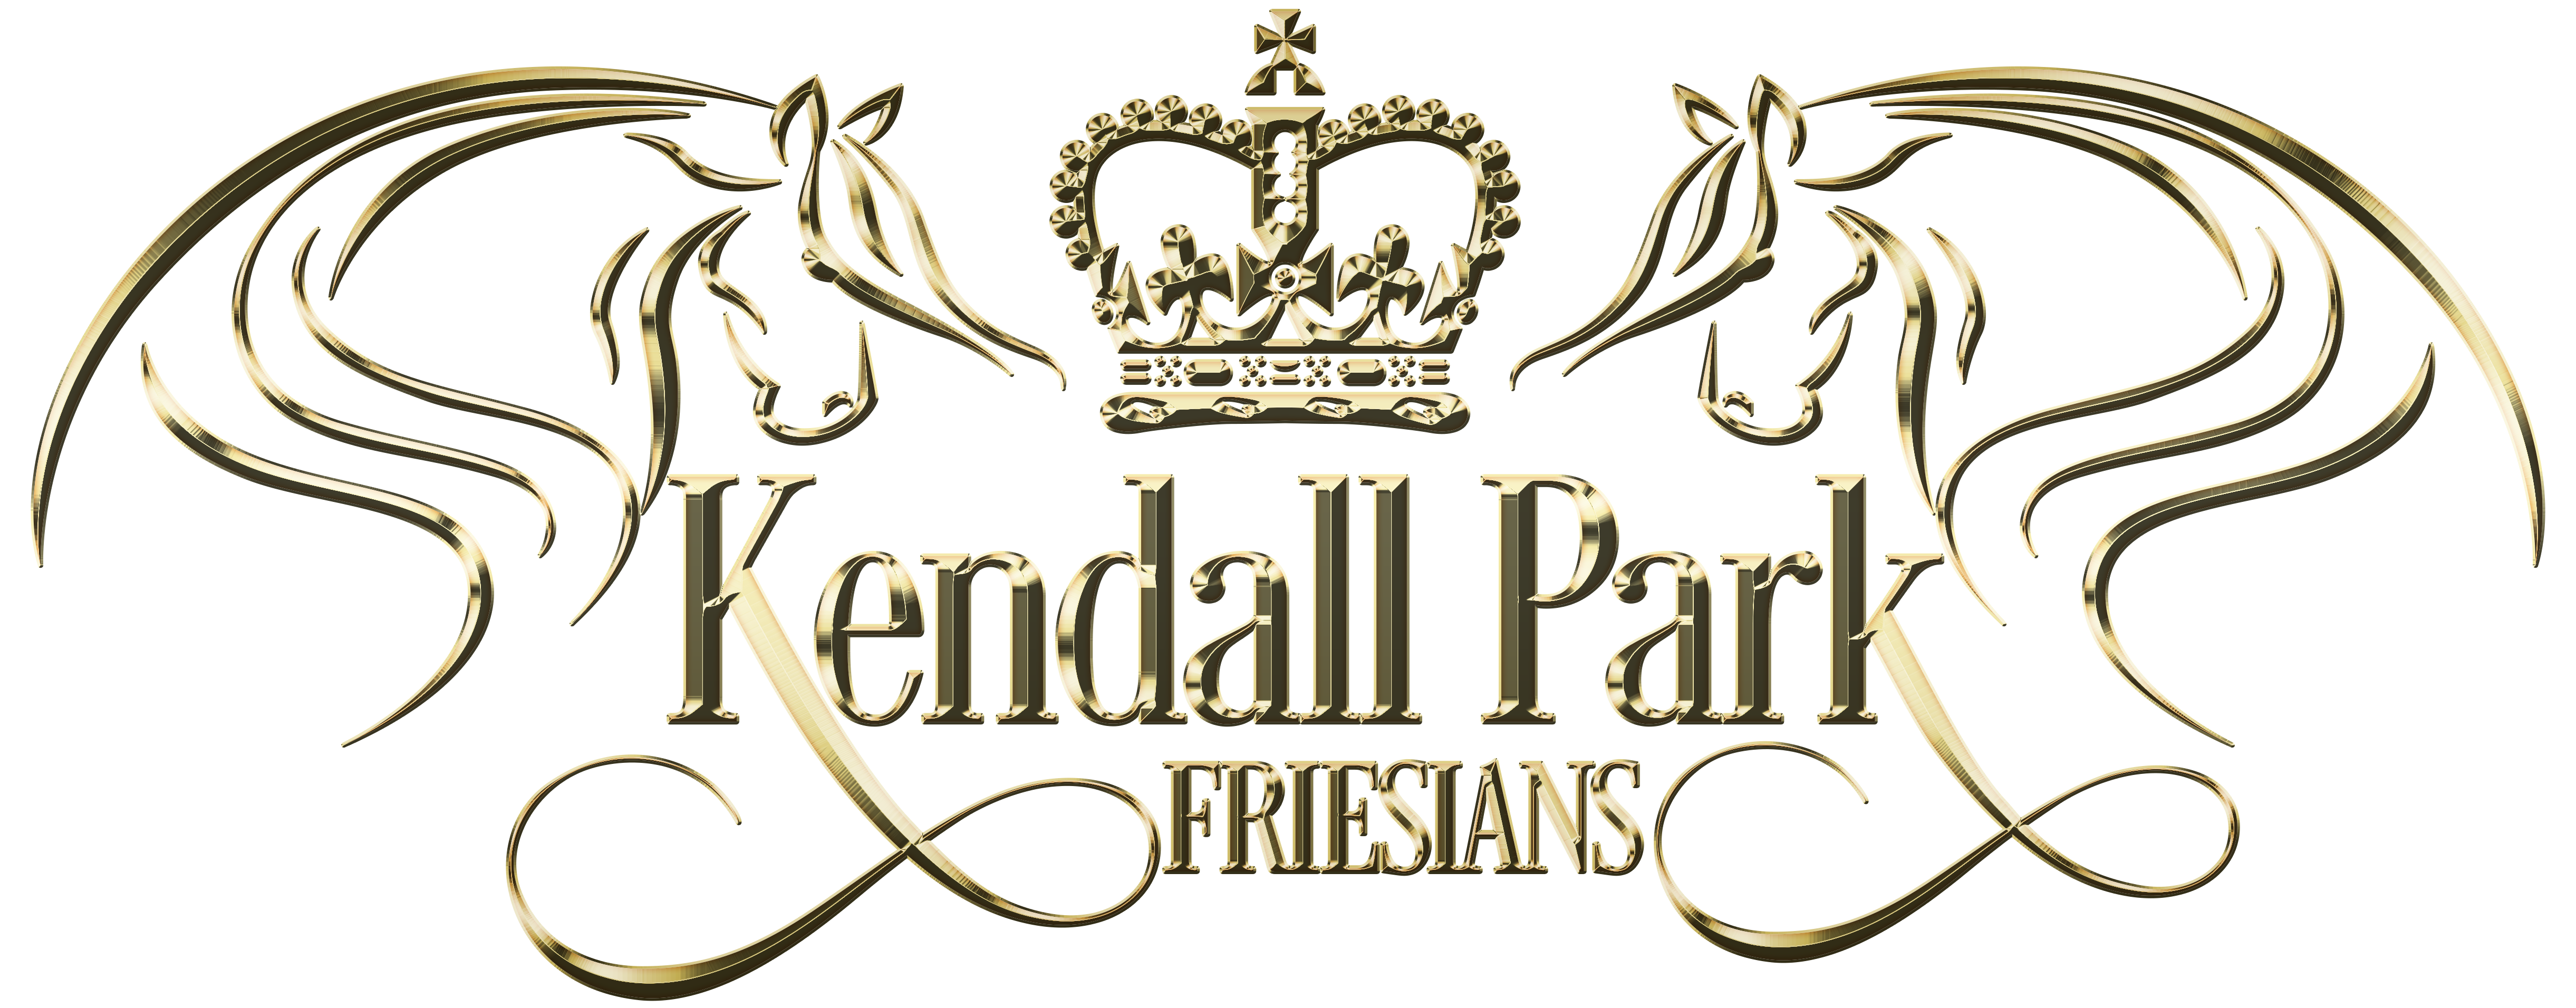 Kendall Park Friesians Logo